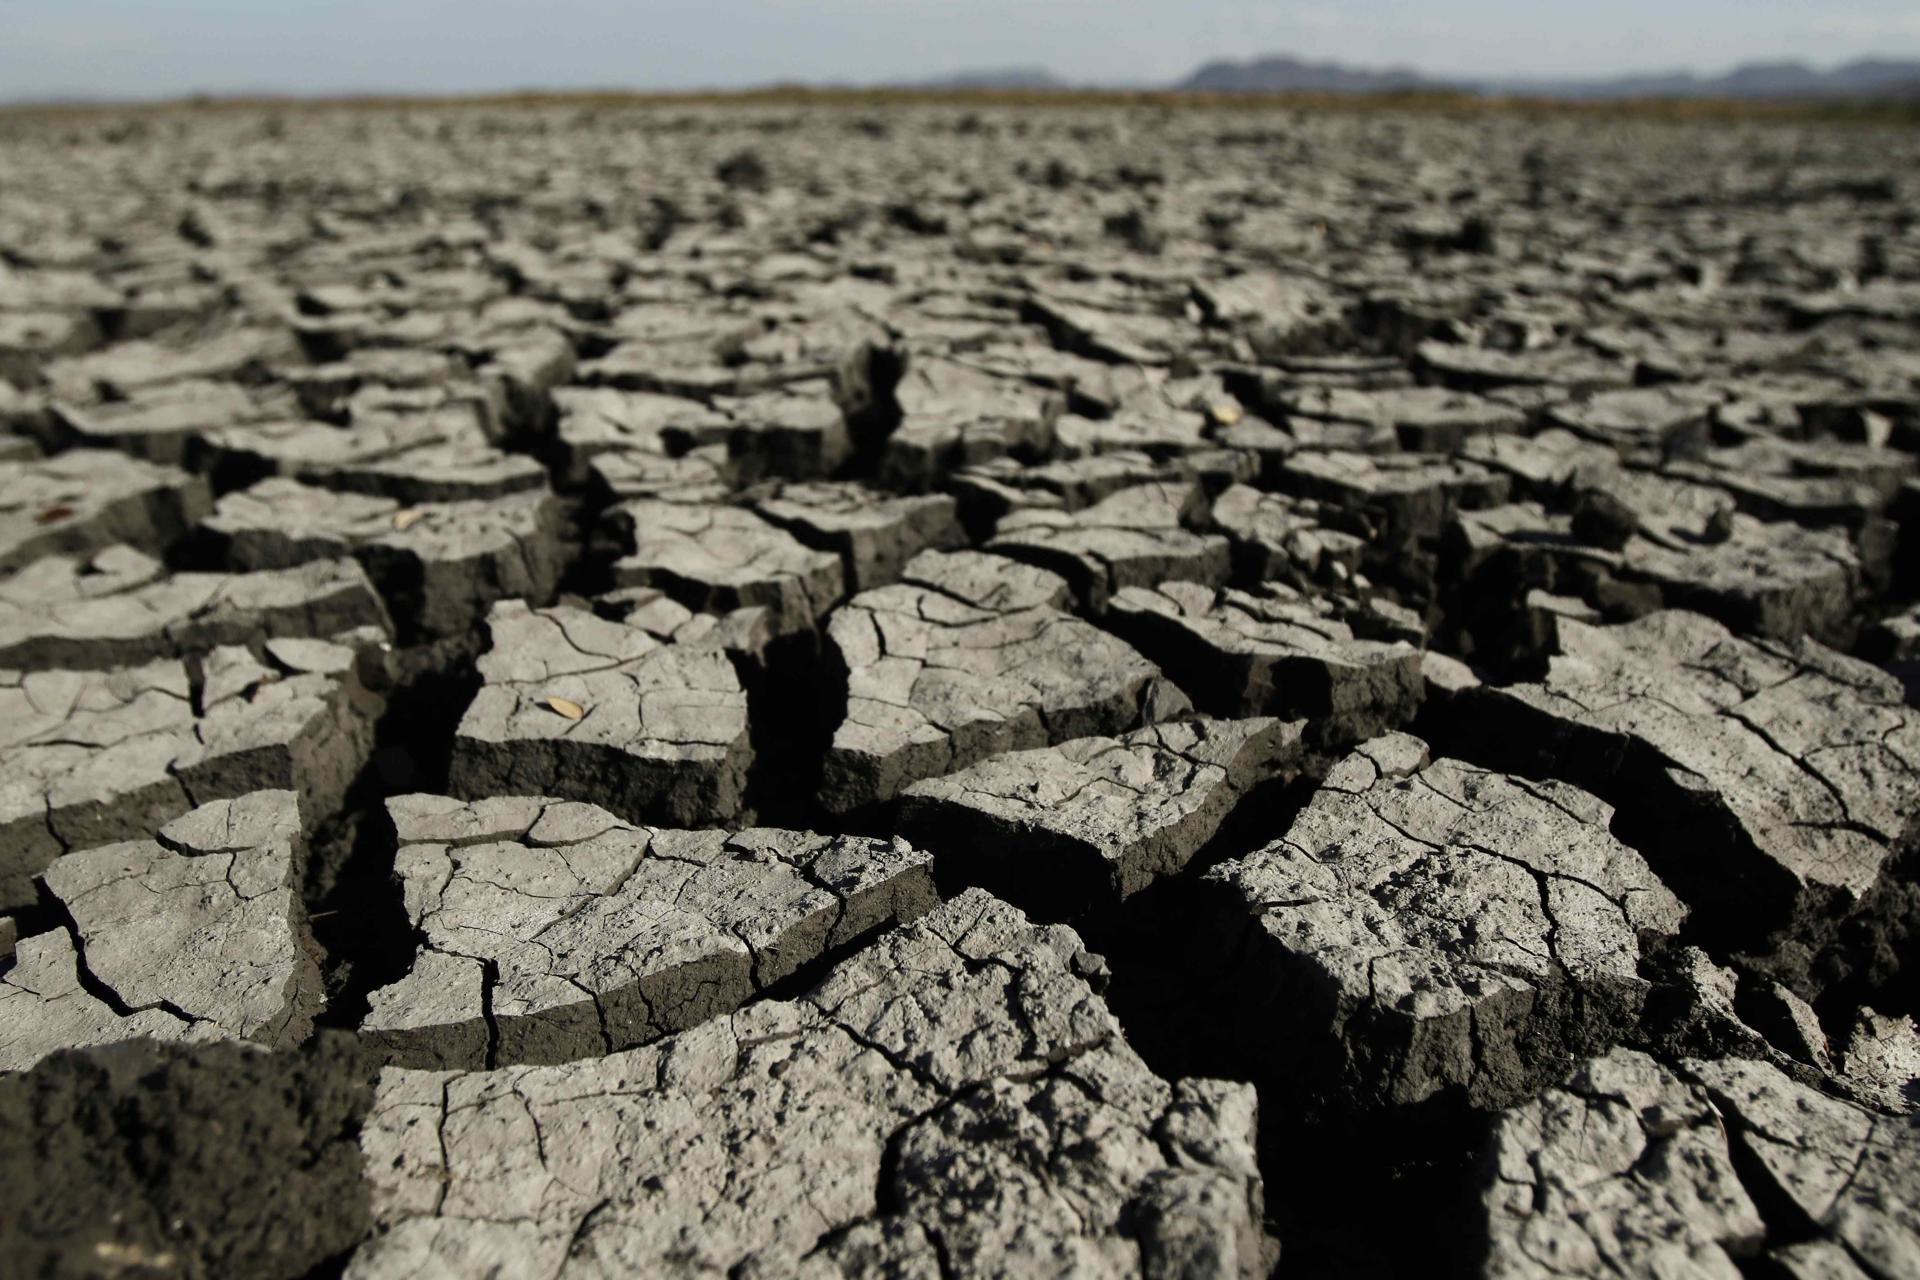 OMM prevé 2 años de "grave aumento" de temperaturas con la llegada de El Niño